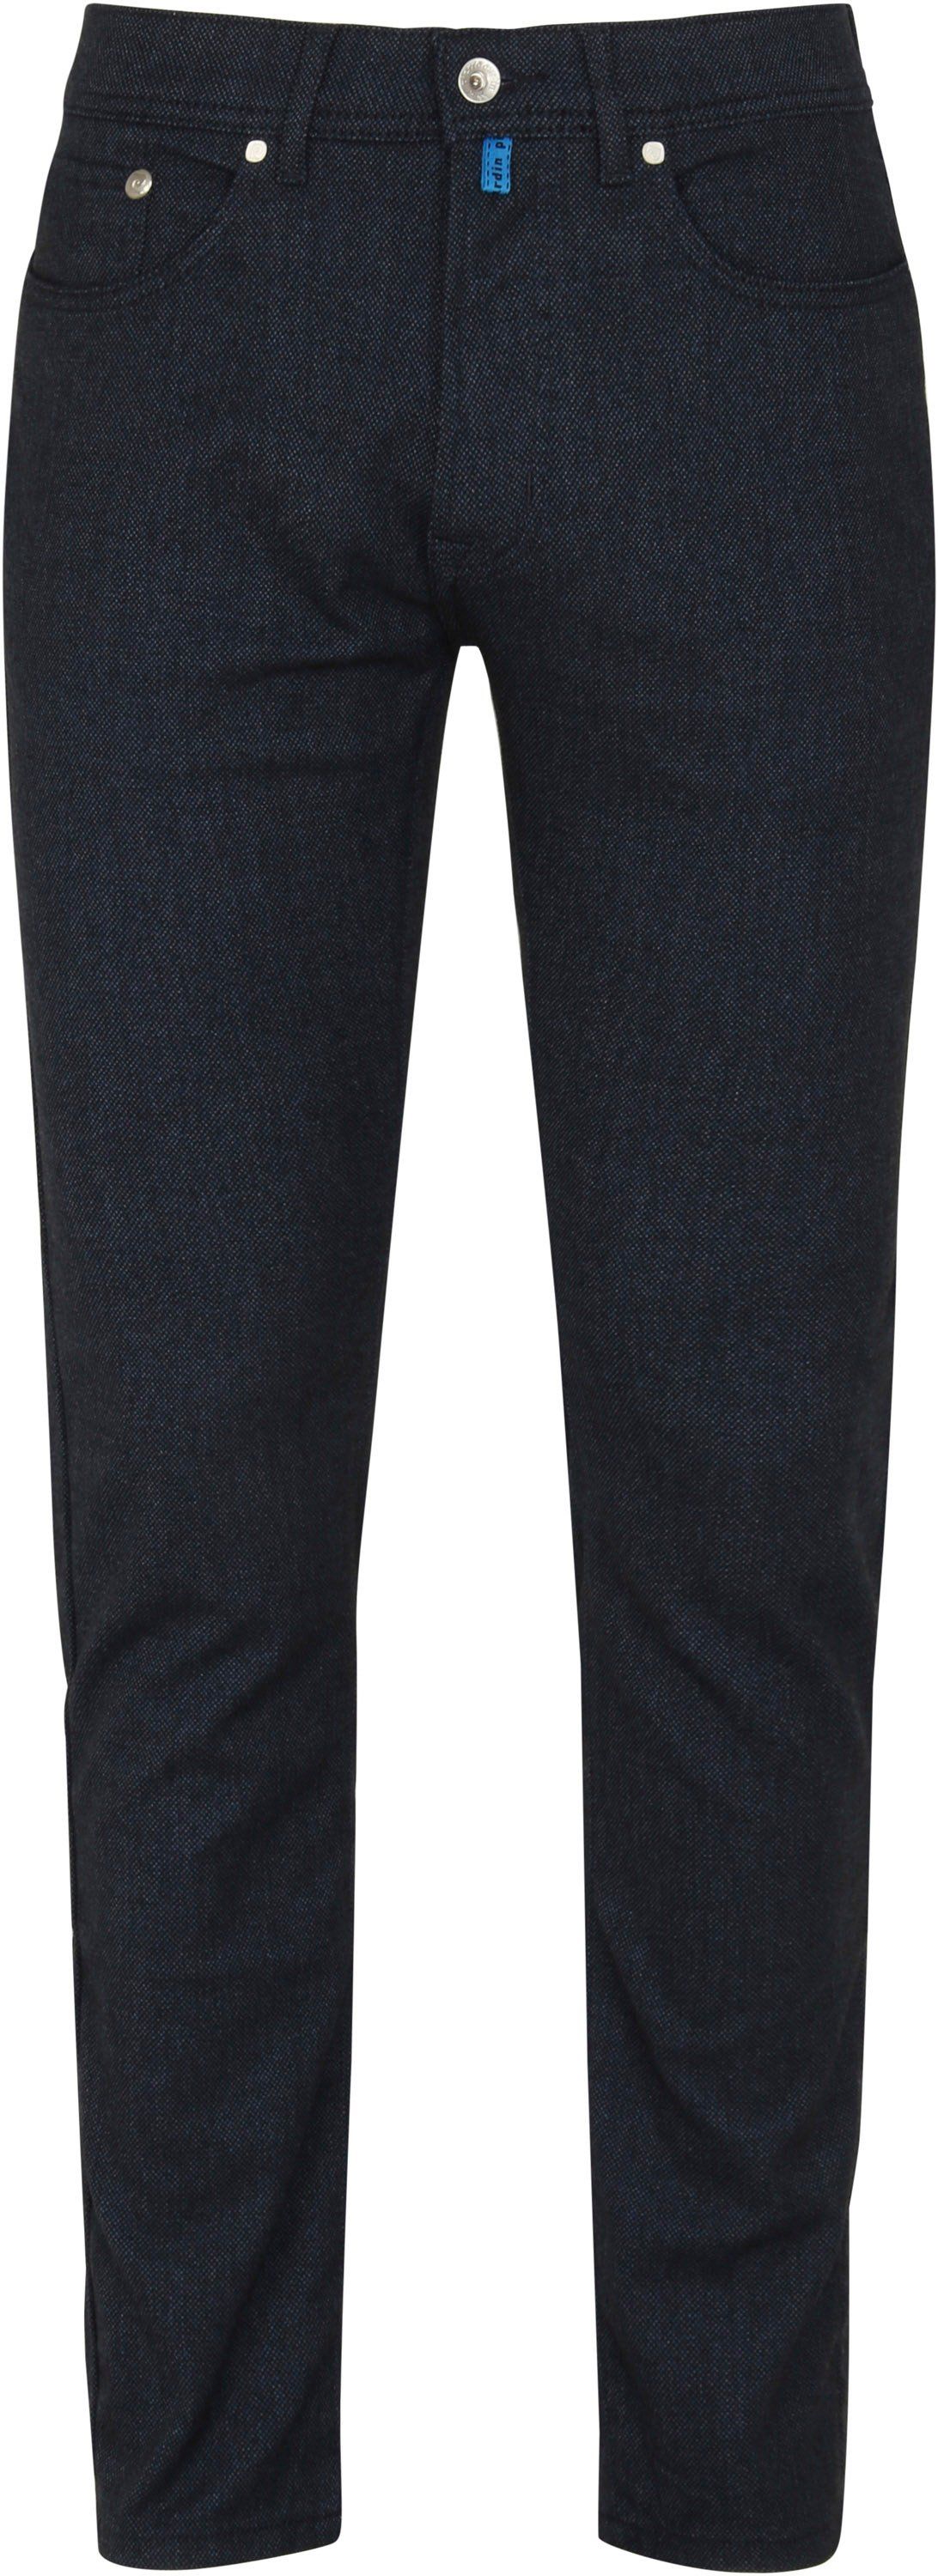 Pierre Cardin Jeans Lyon Future Flex Dark Blue Dark Blue size W 31